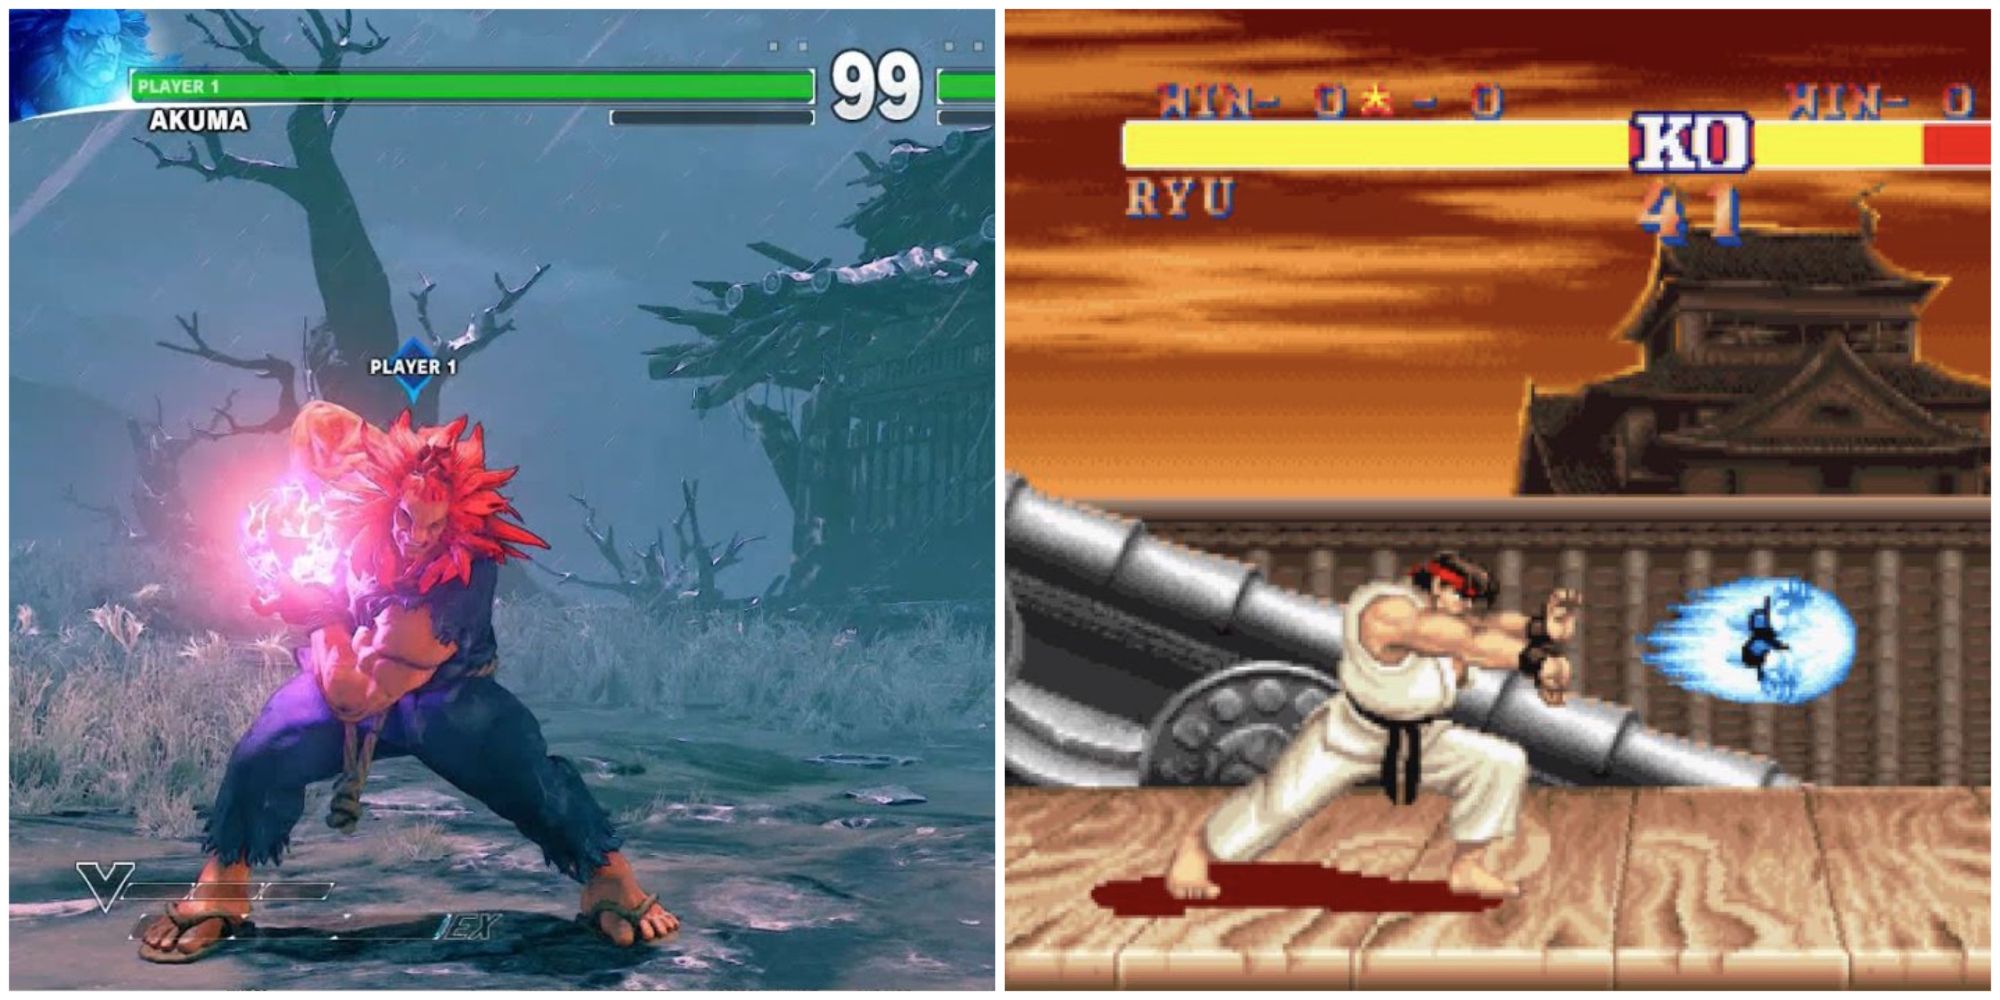 Street Fighter - Akuma and Ryu